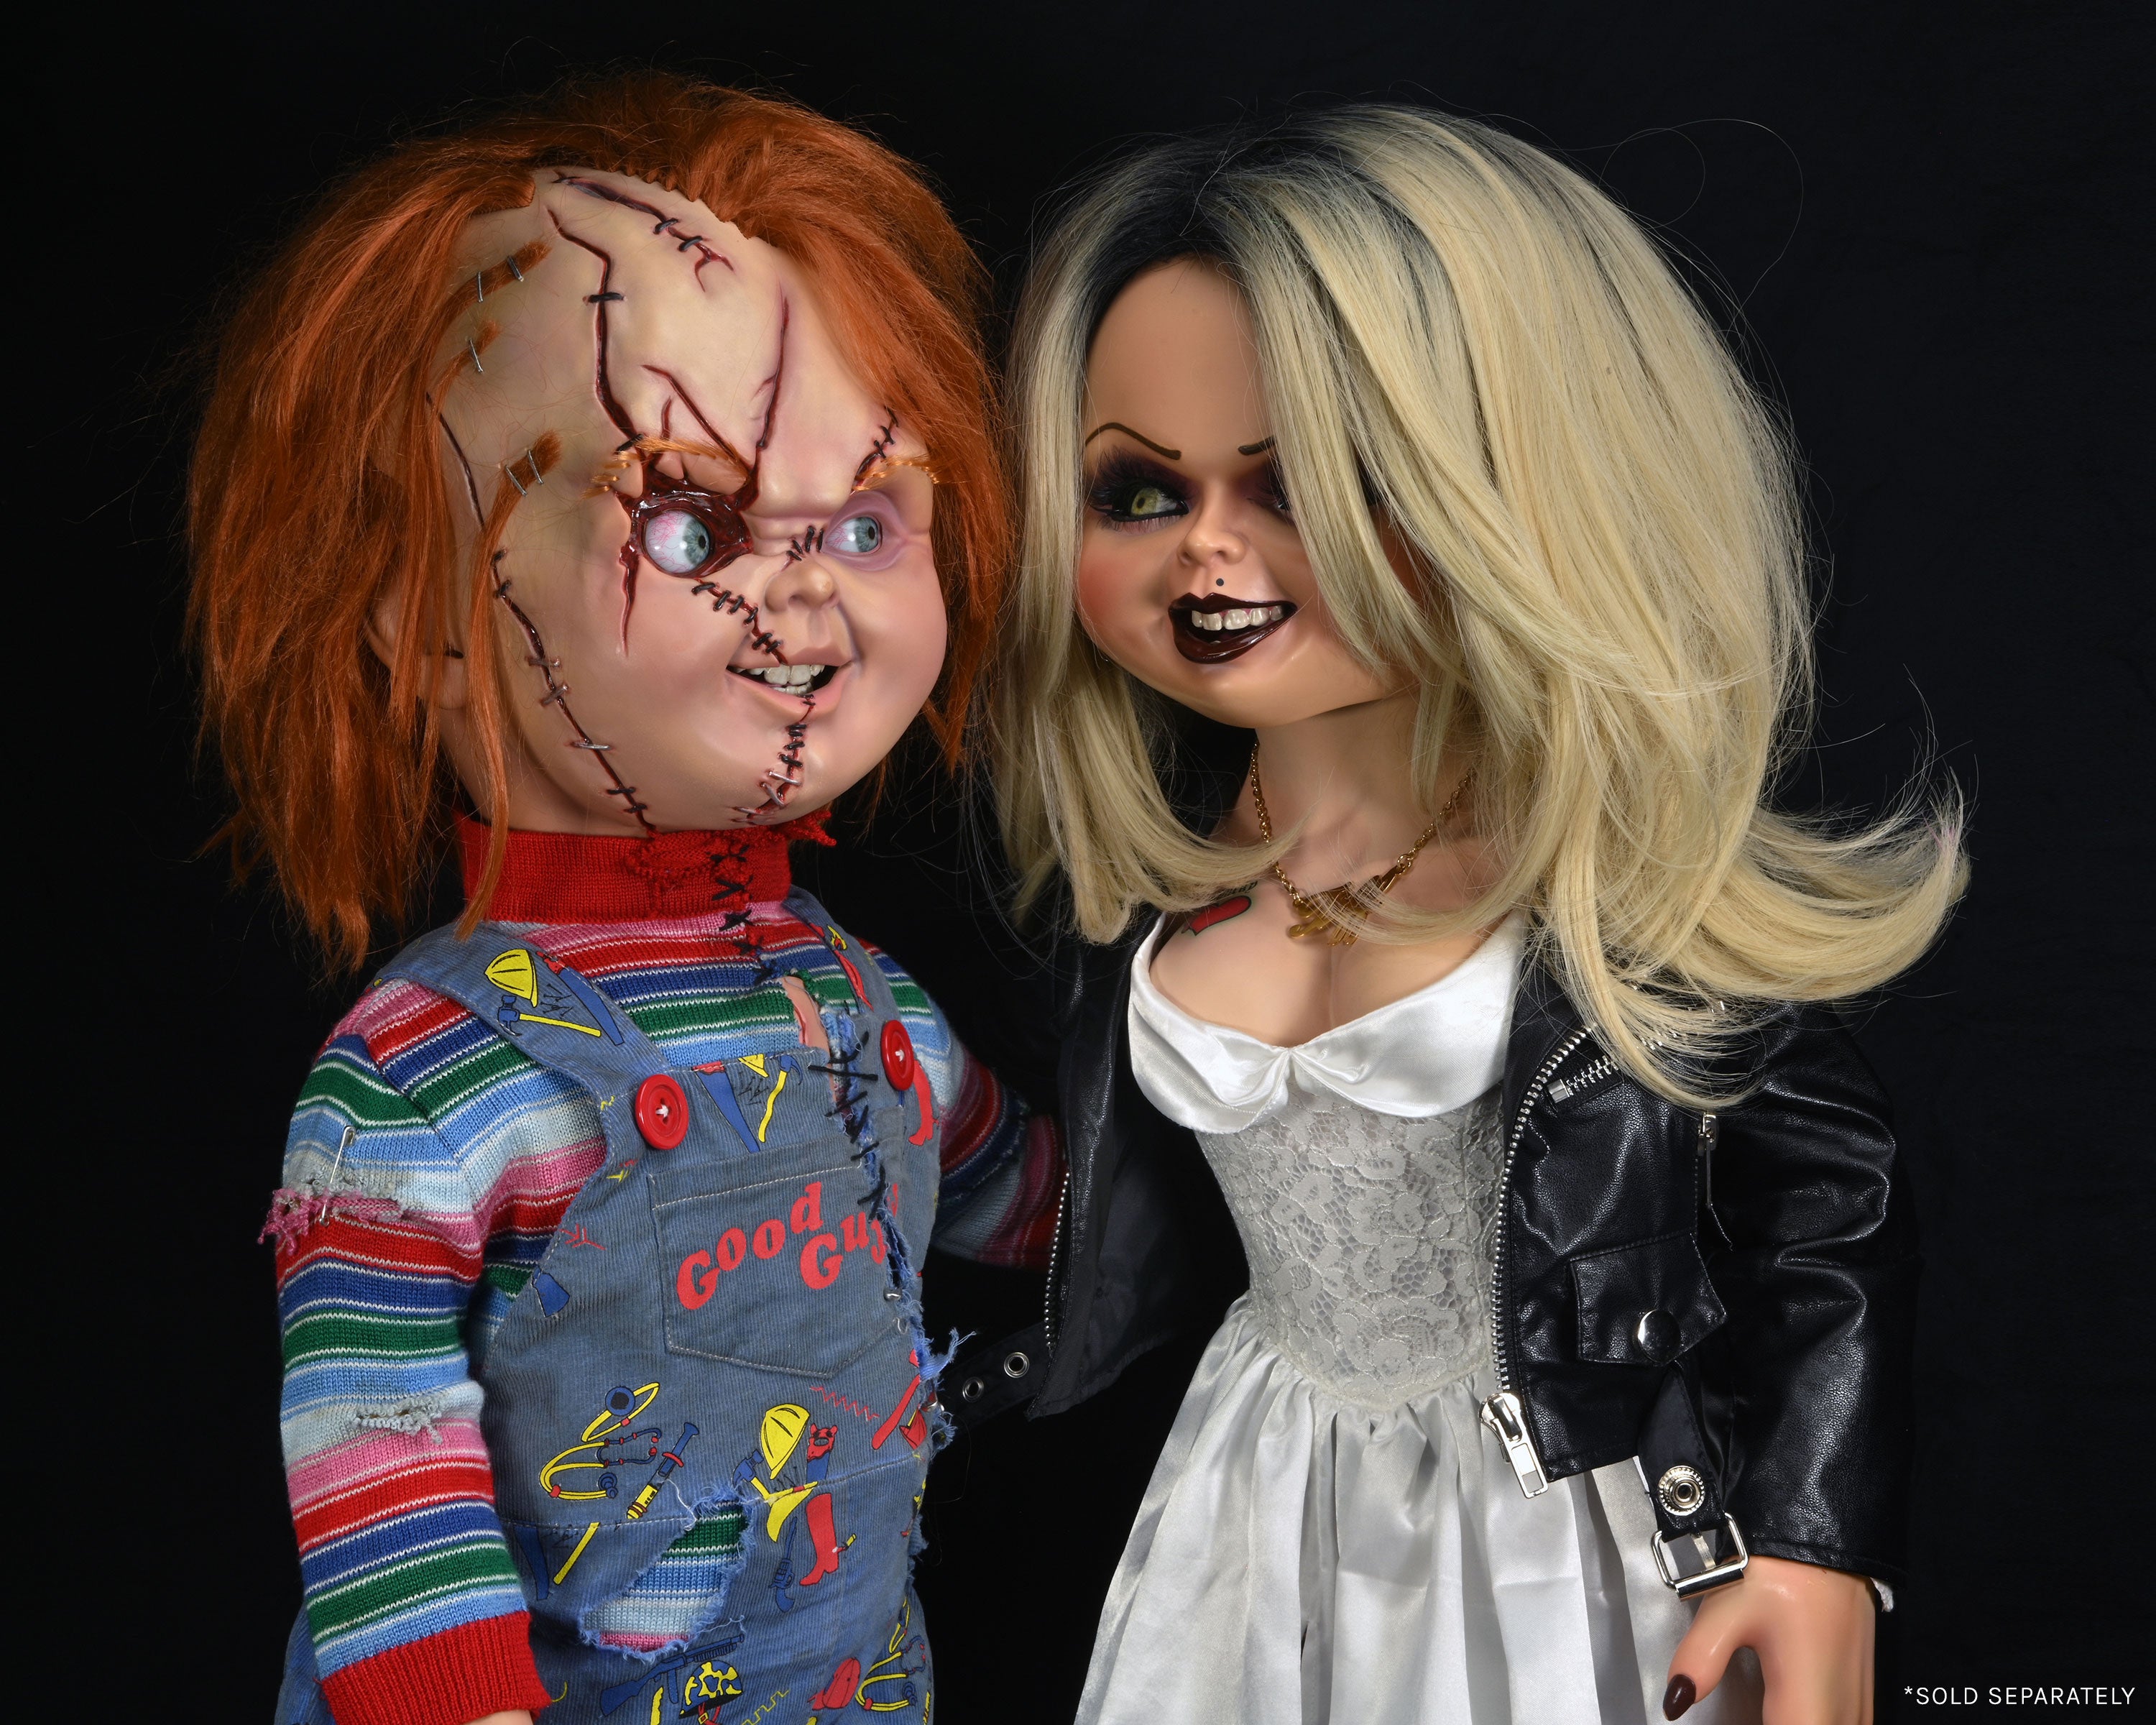 Bride of Chucky - 1:1 Replica - Life-Size Chucky (PRE-ORDER) – NECA